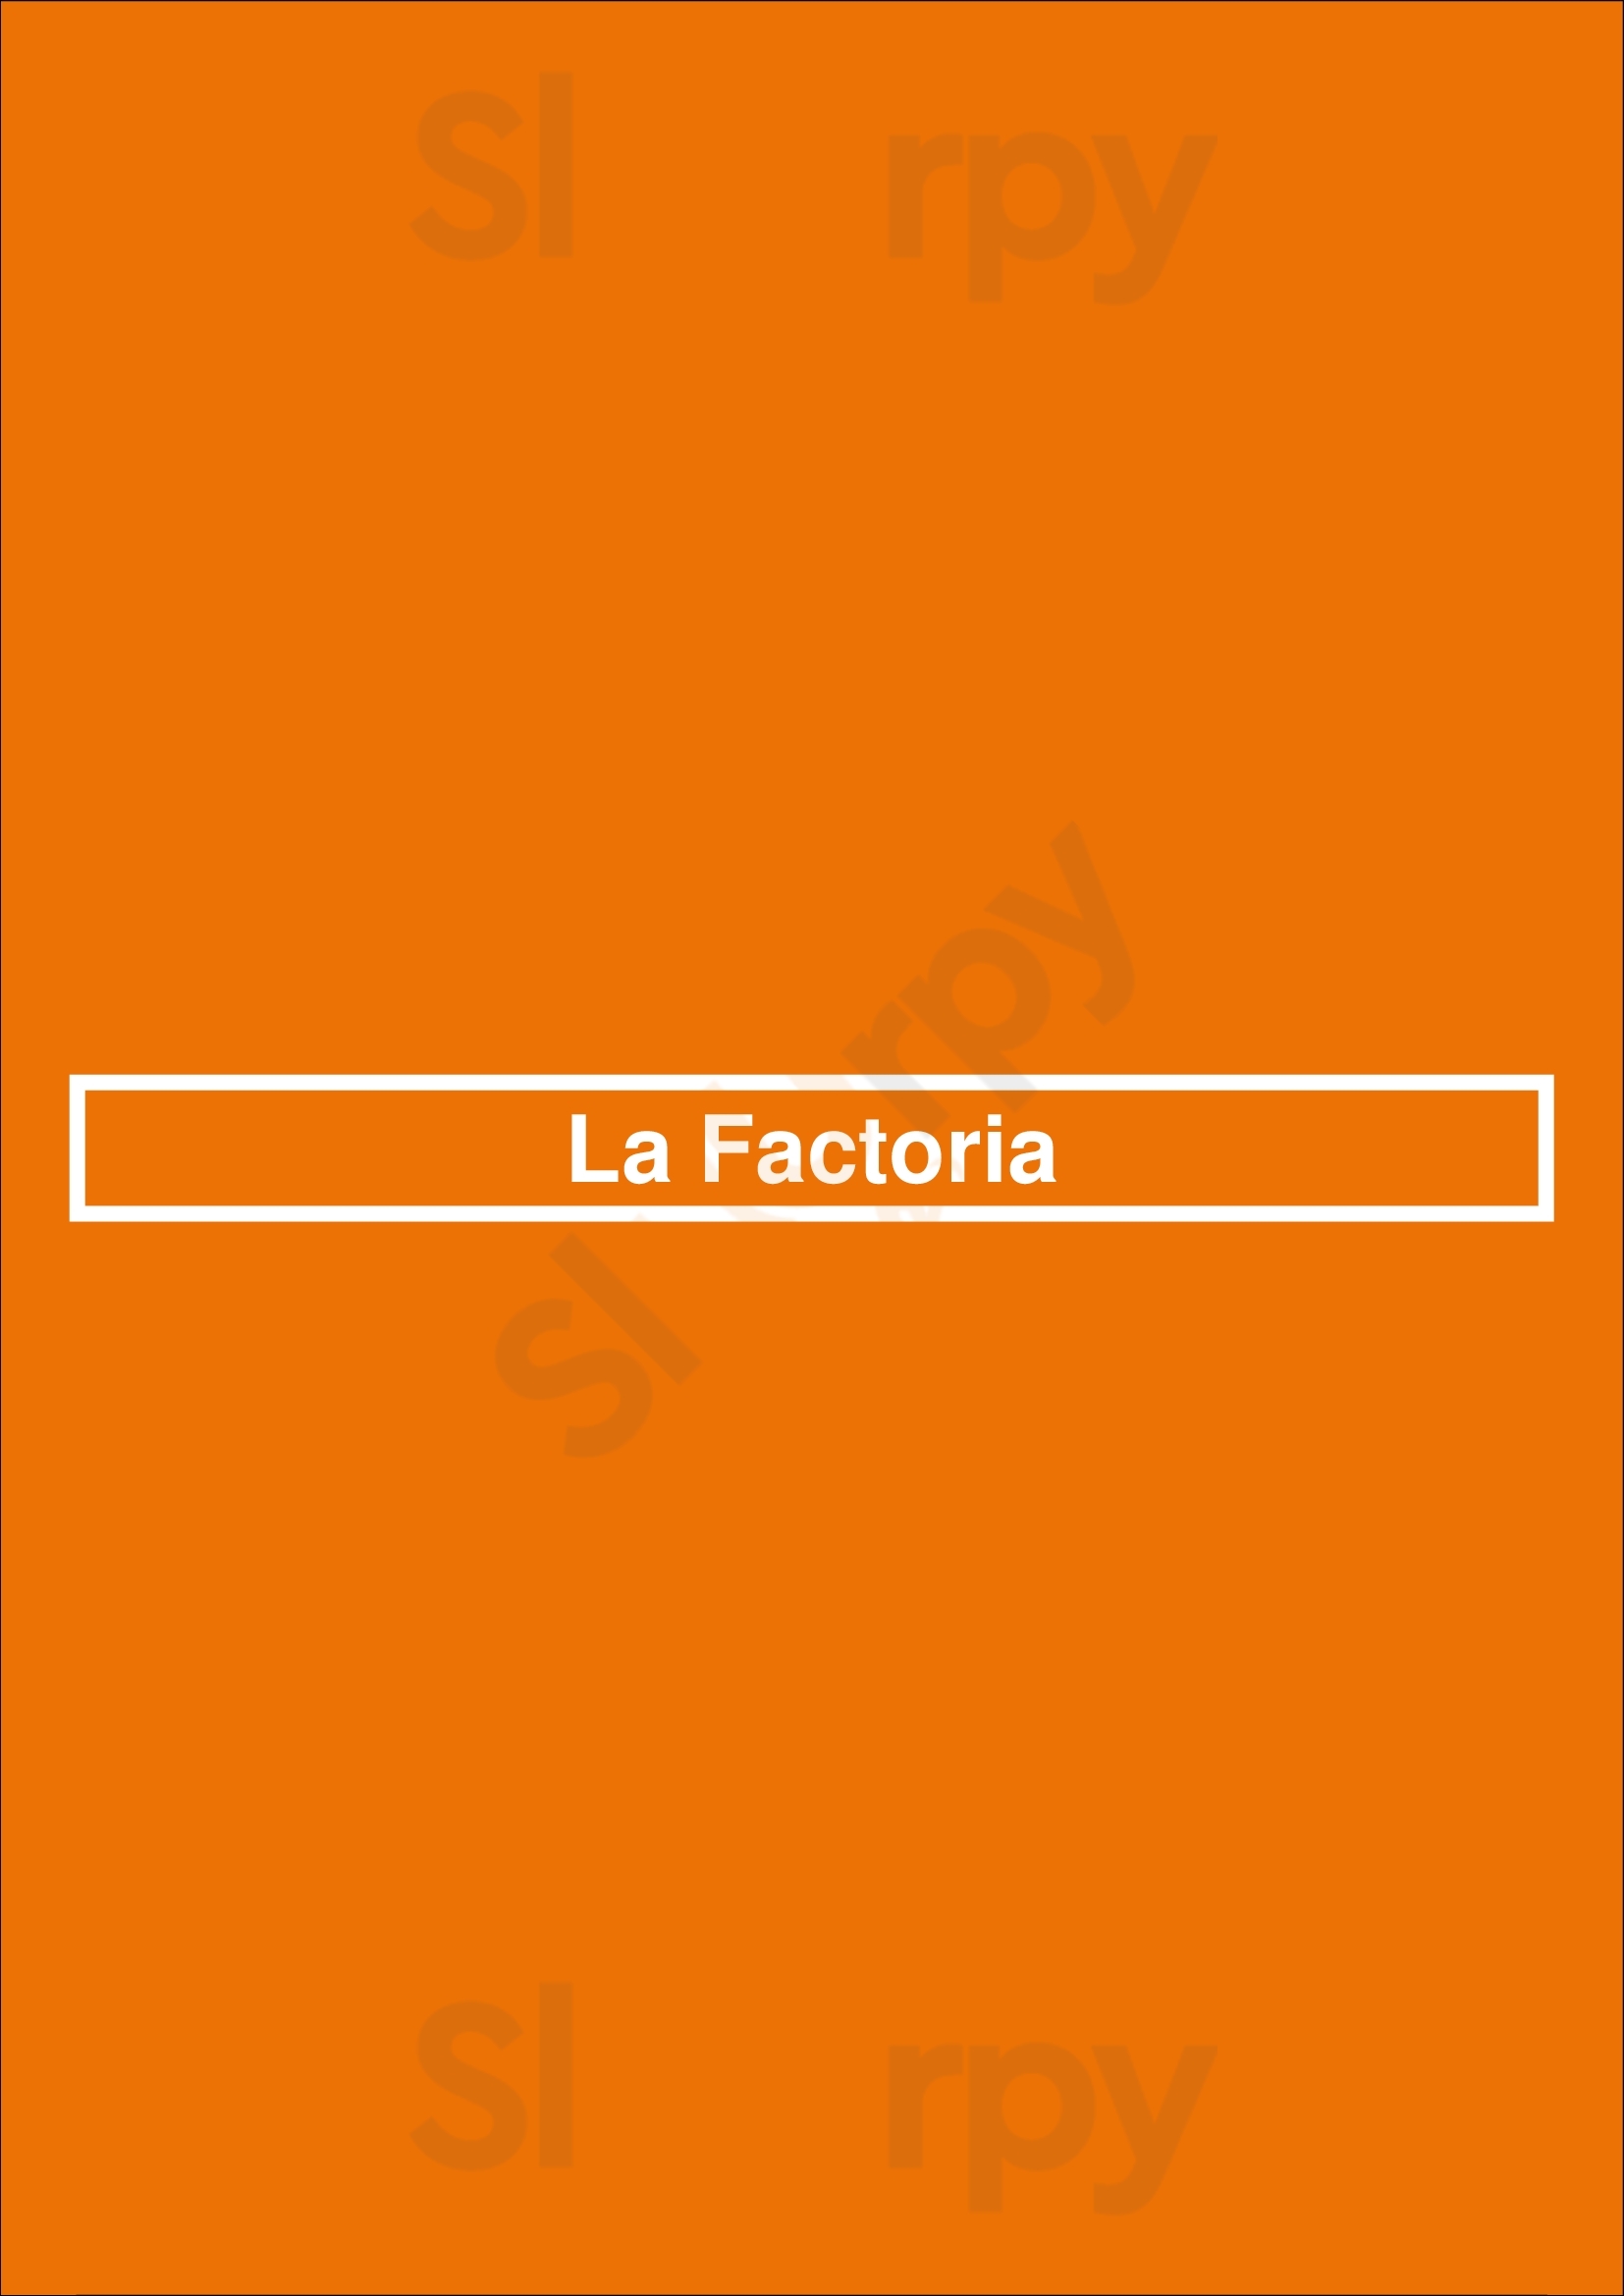 La Factoria Barcelona Menu - 1